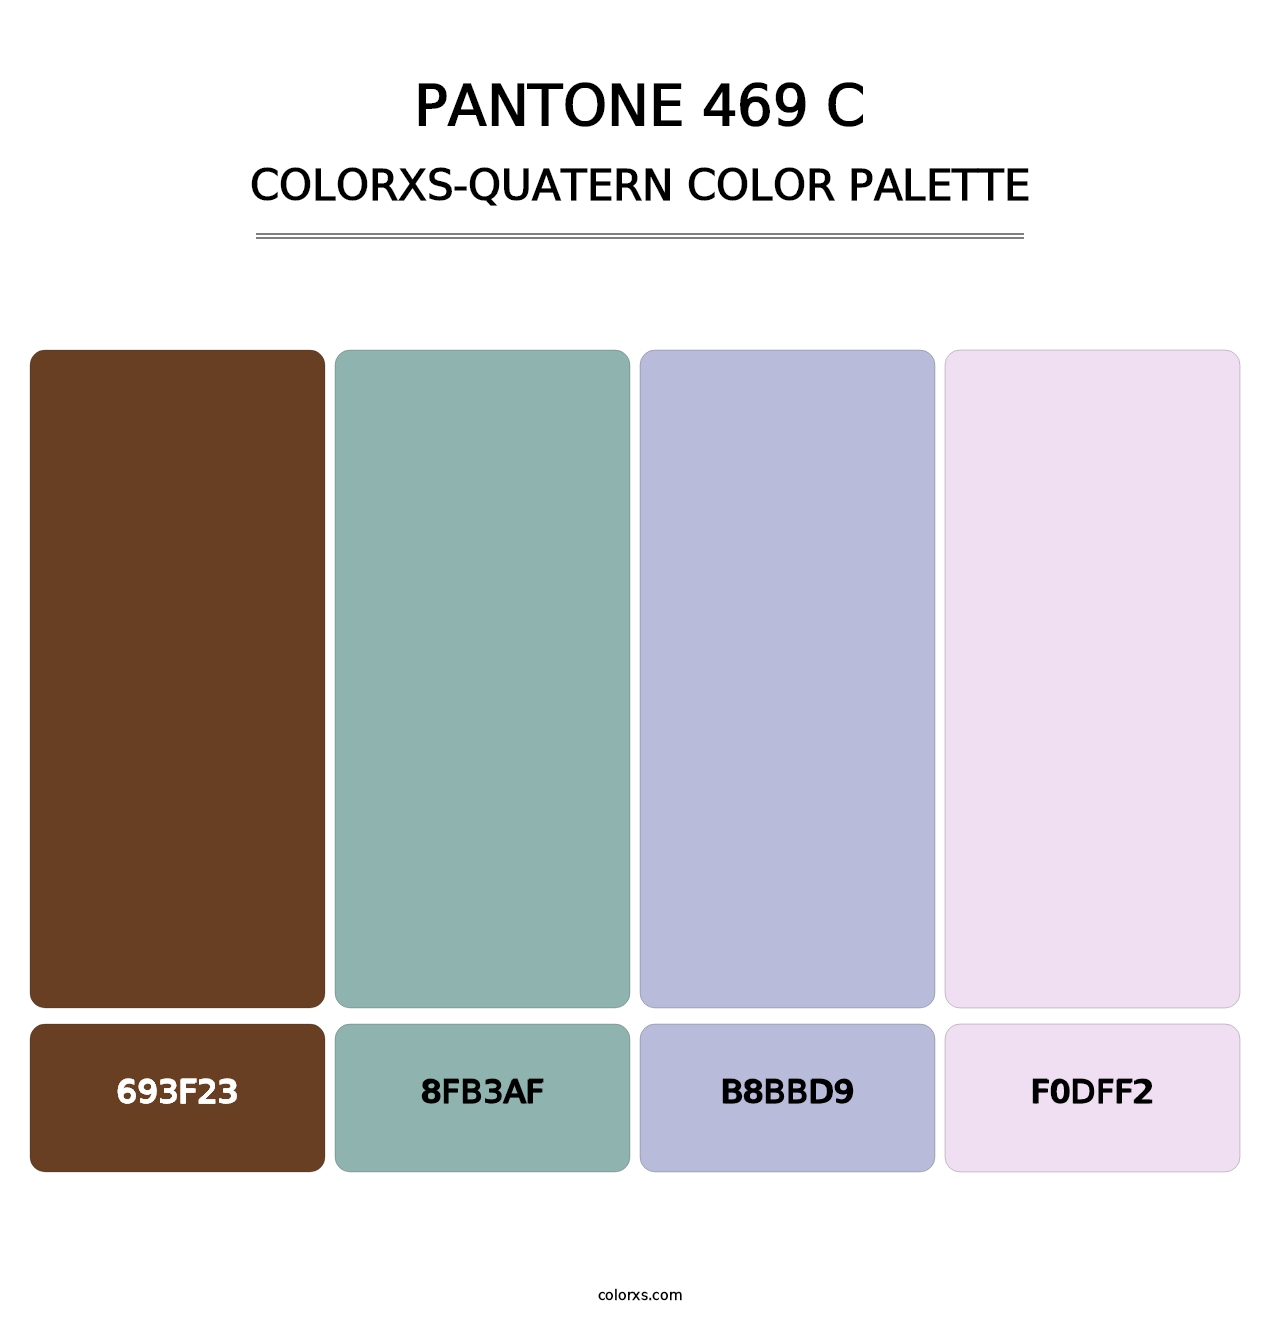 PANTONE 469 C - Colorxs Quatern Palette